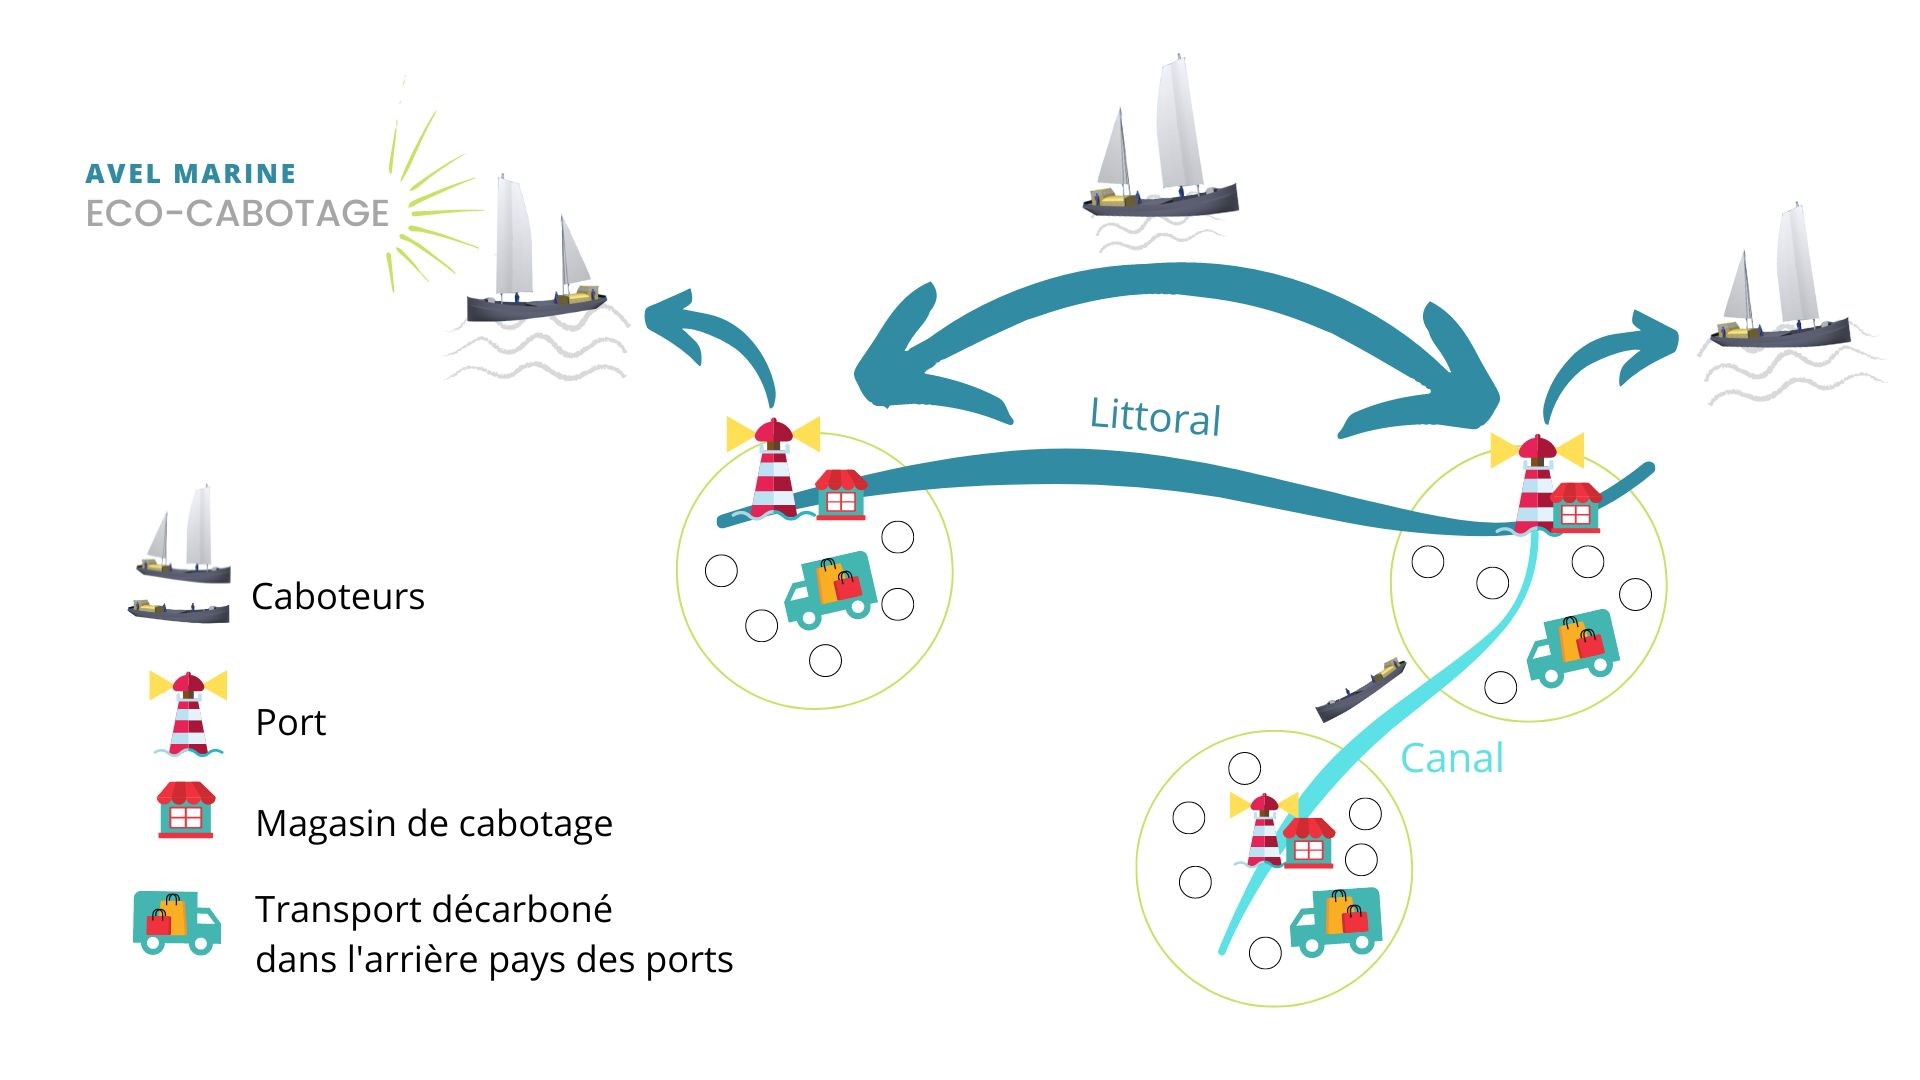 échanges entres ports bretons en caboteurs bas carbone